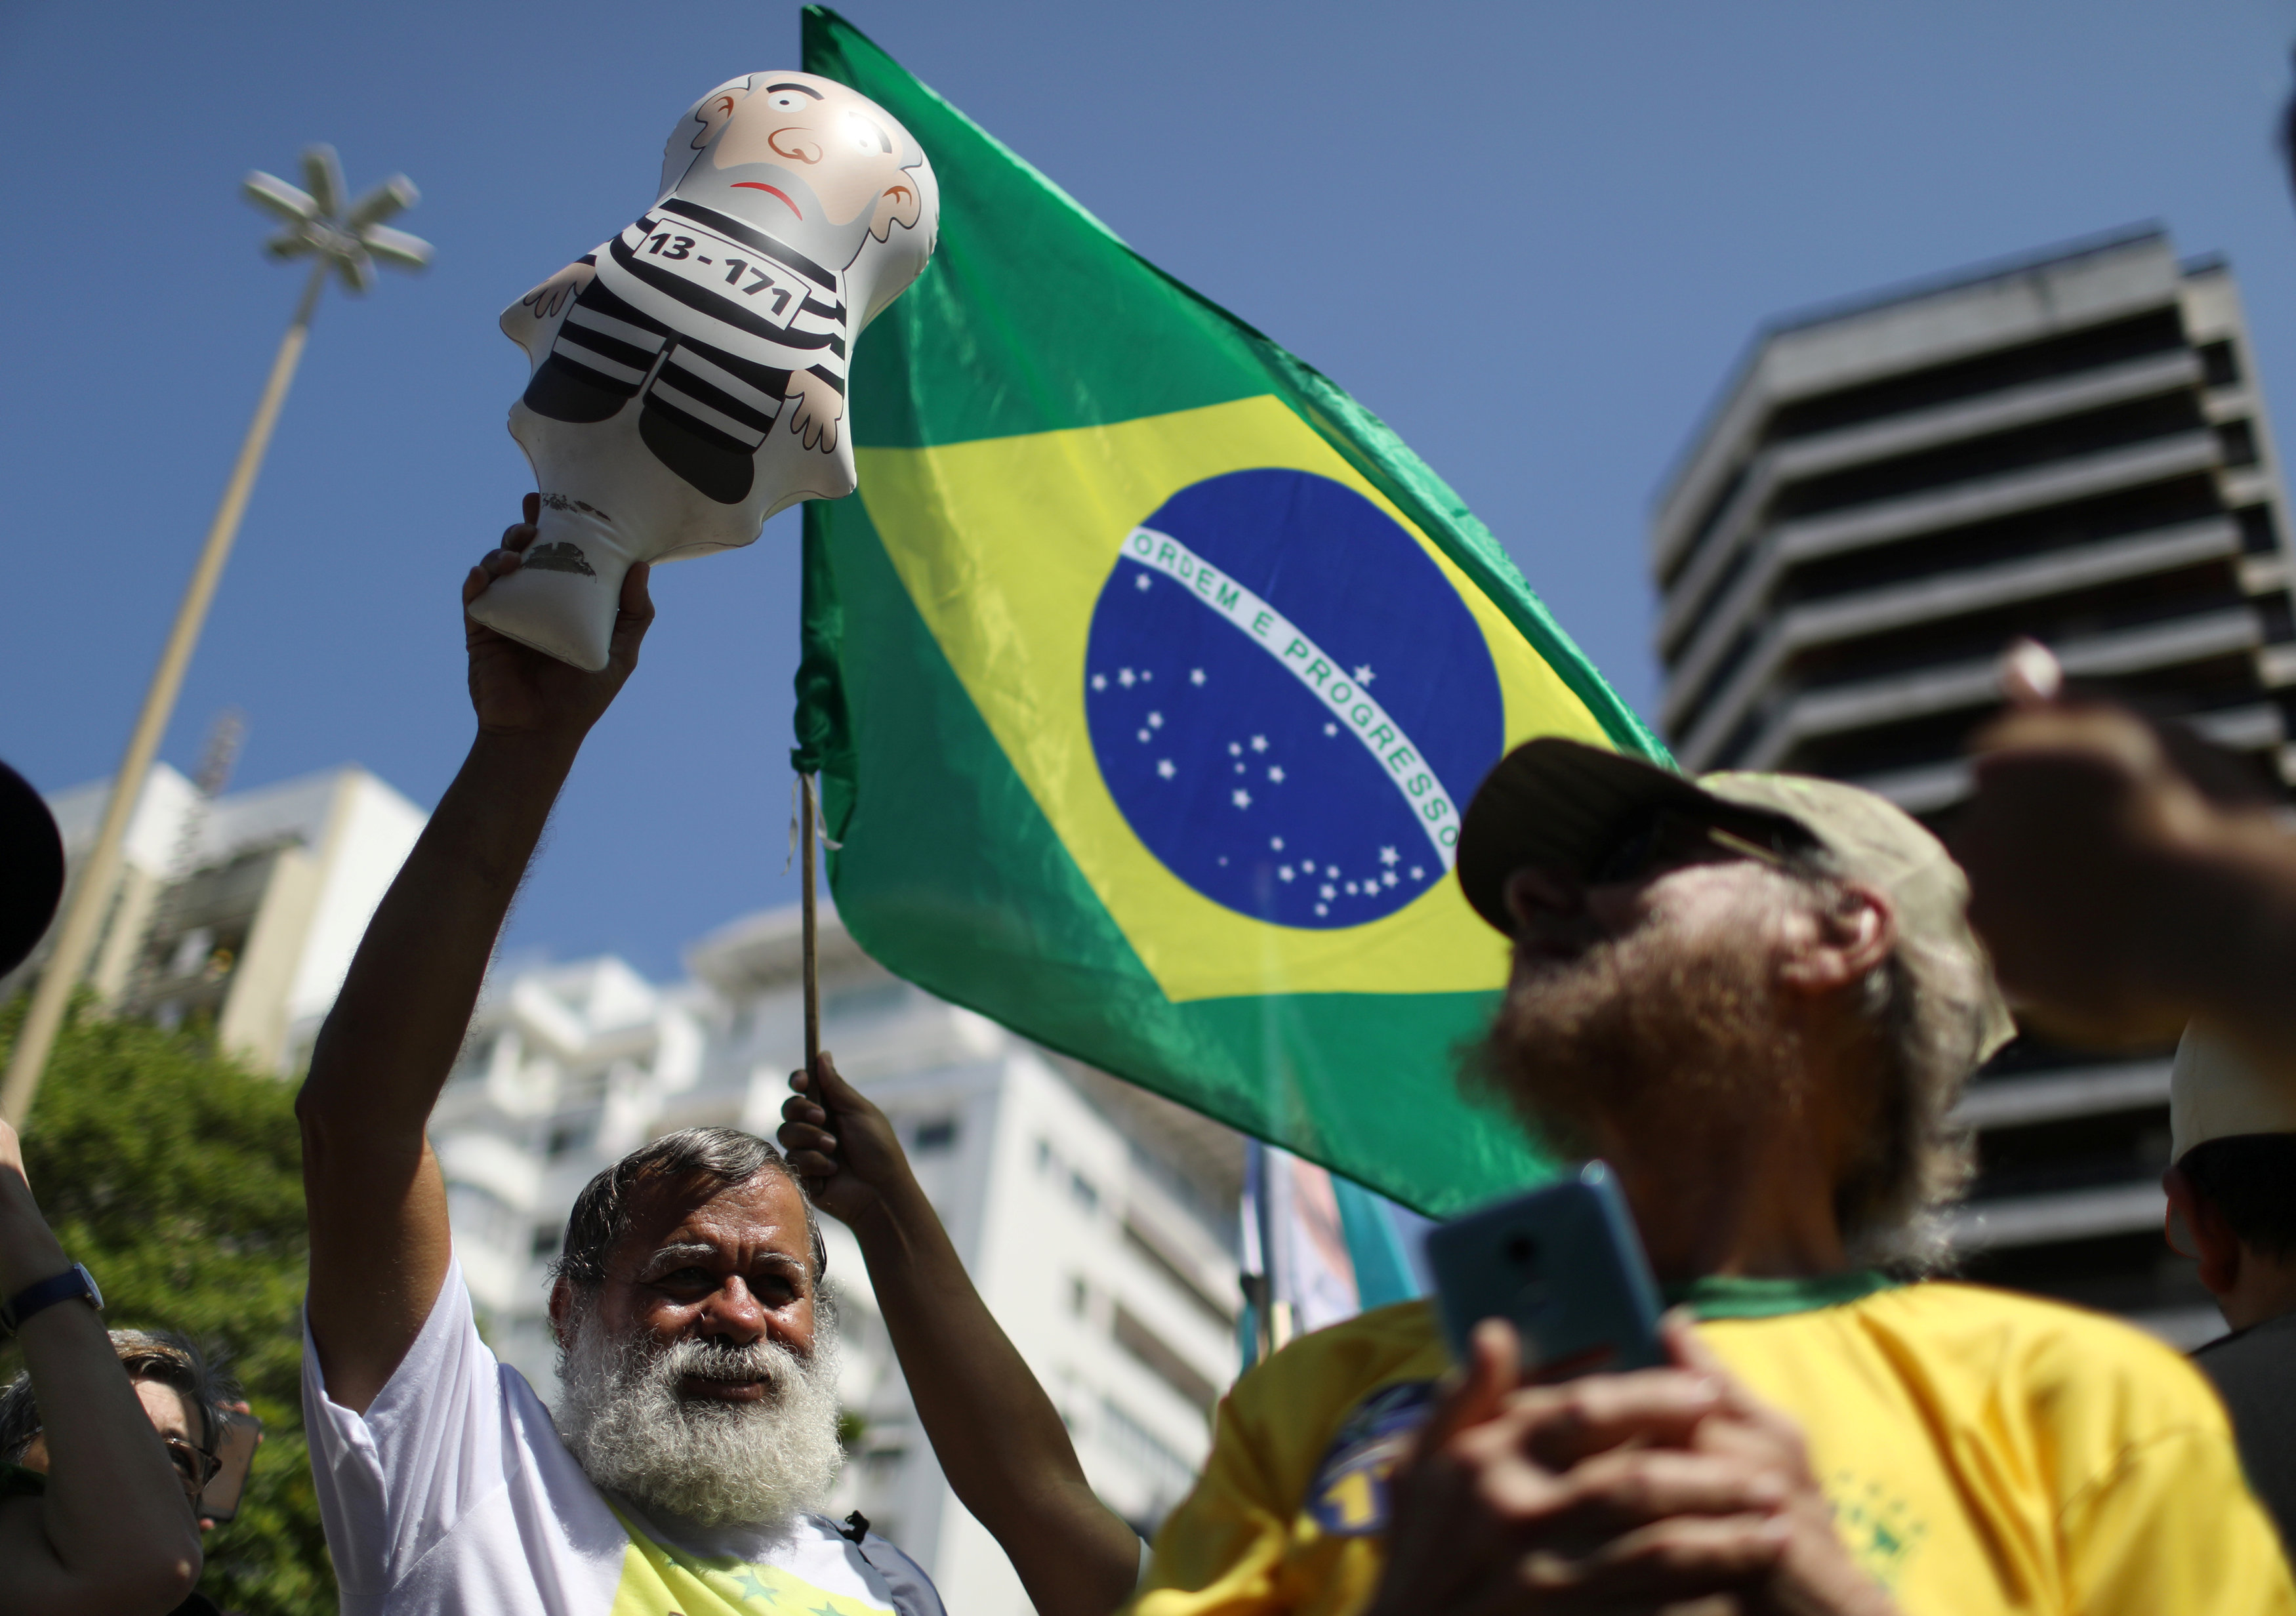 El exmandatario brasileño es considerado un preso político. Denuncian una maniobra judicial para intentar impedir su participación en los comicios presidenciales.